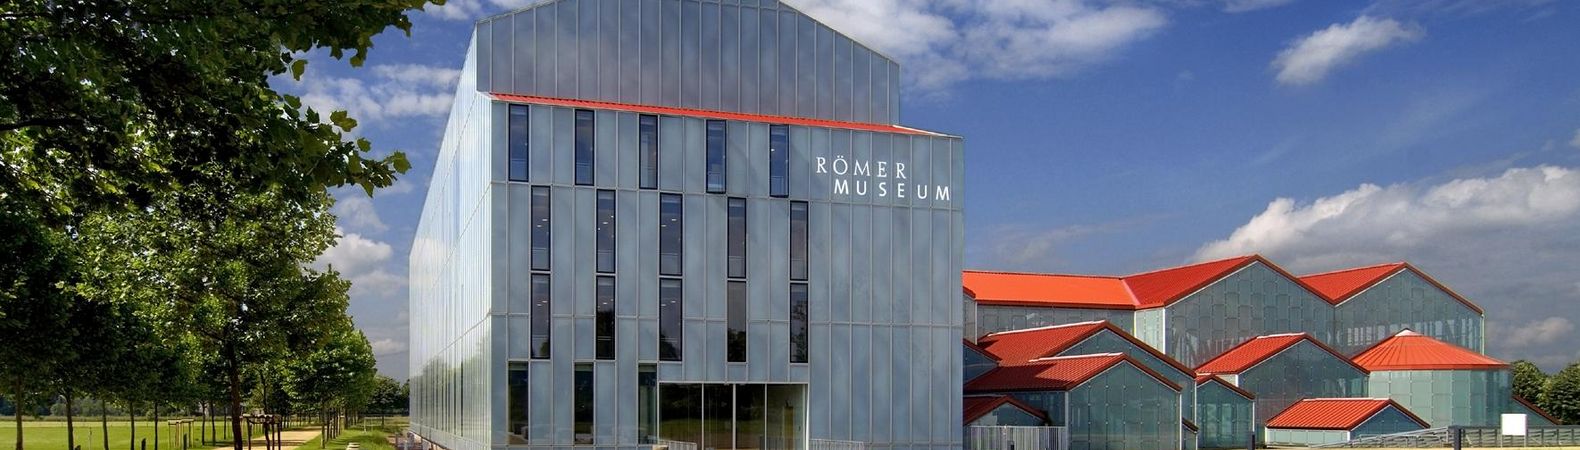 Landschaftsverband Rheinland-RömerMuseum in Xanten